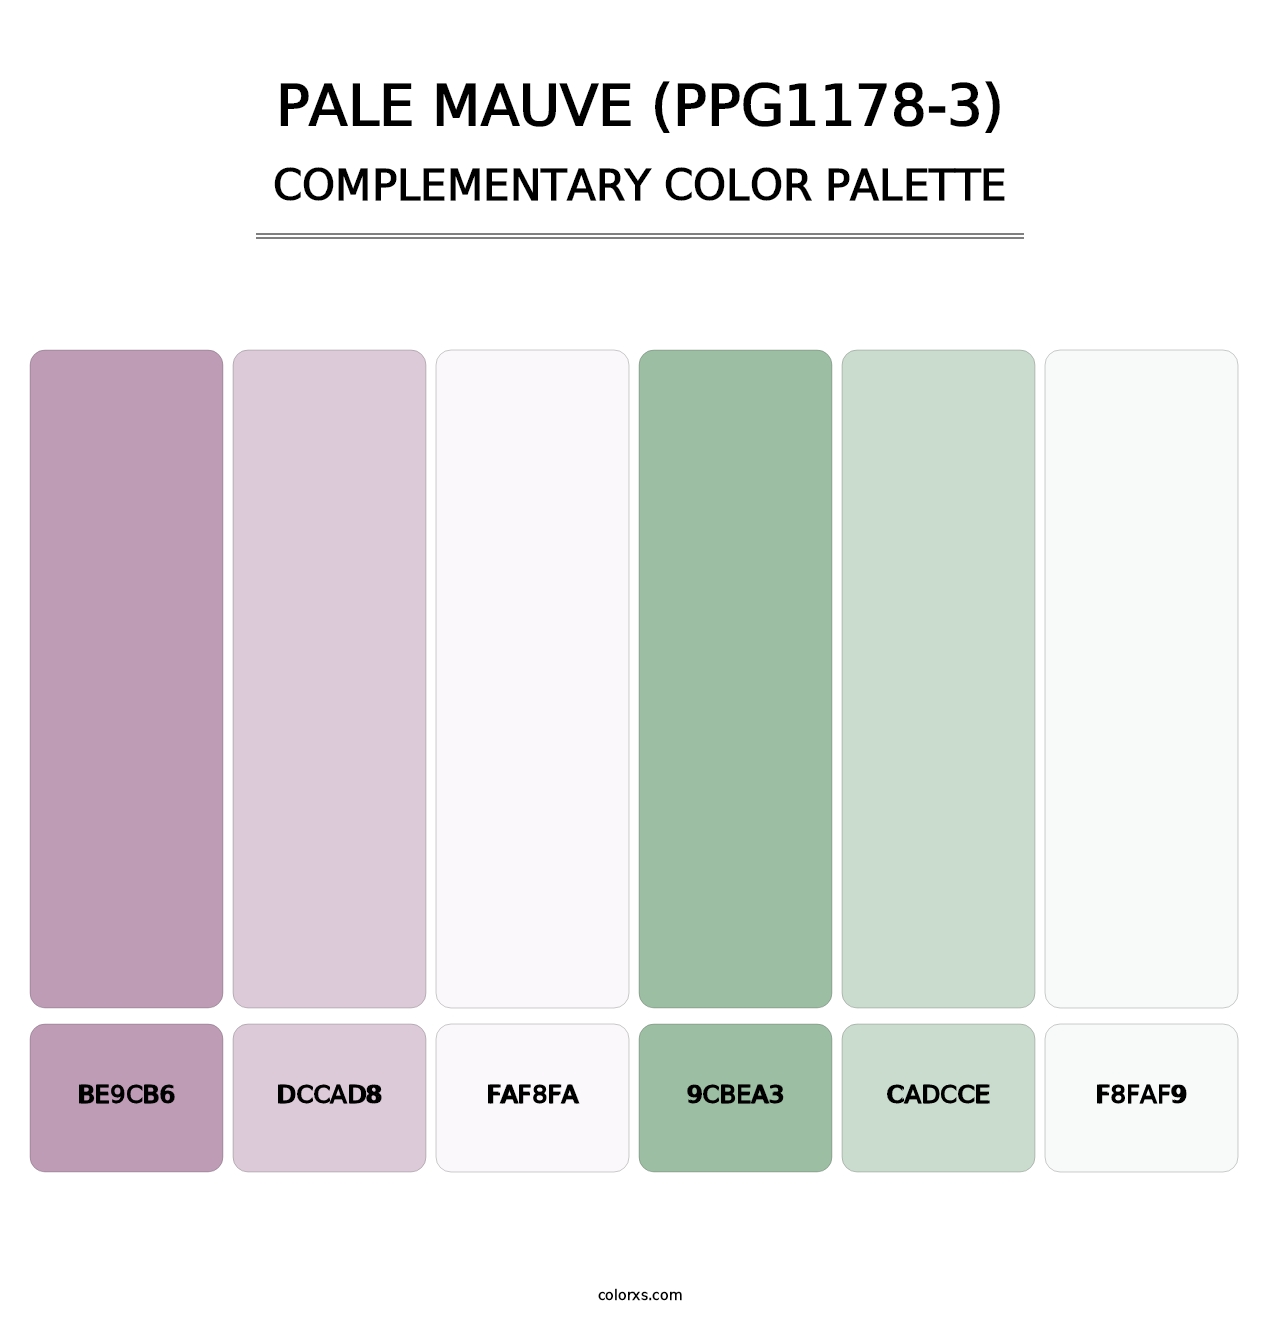 Pale Mauve (PPG1178-3) - Complementary Color Palette